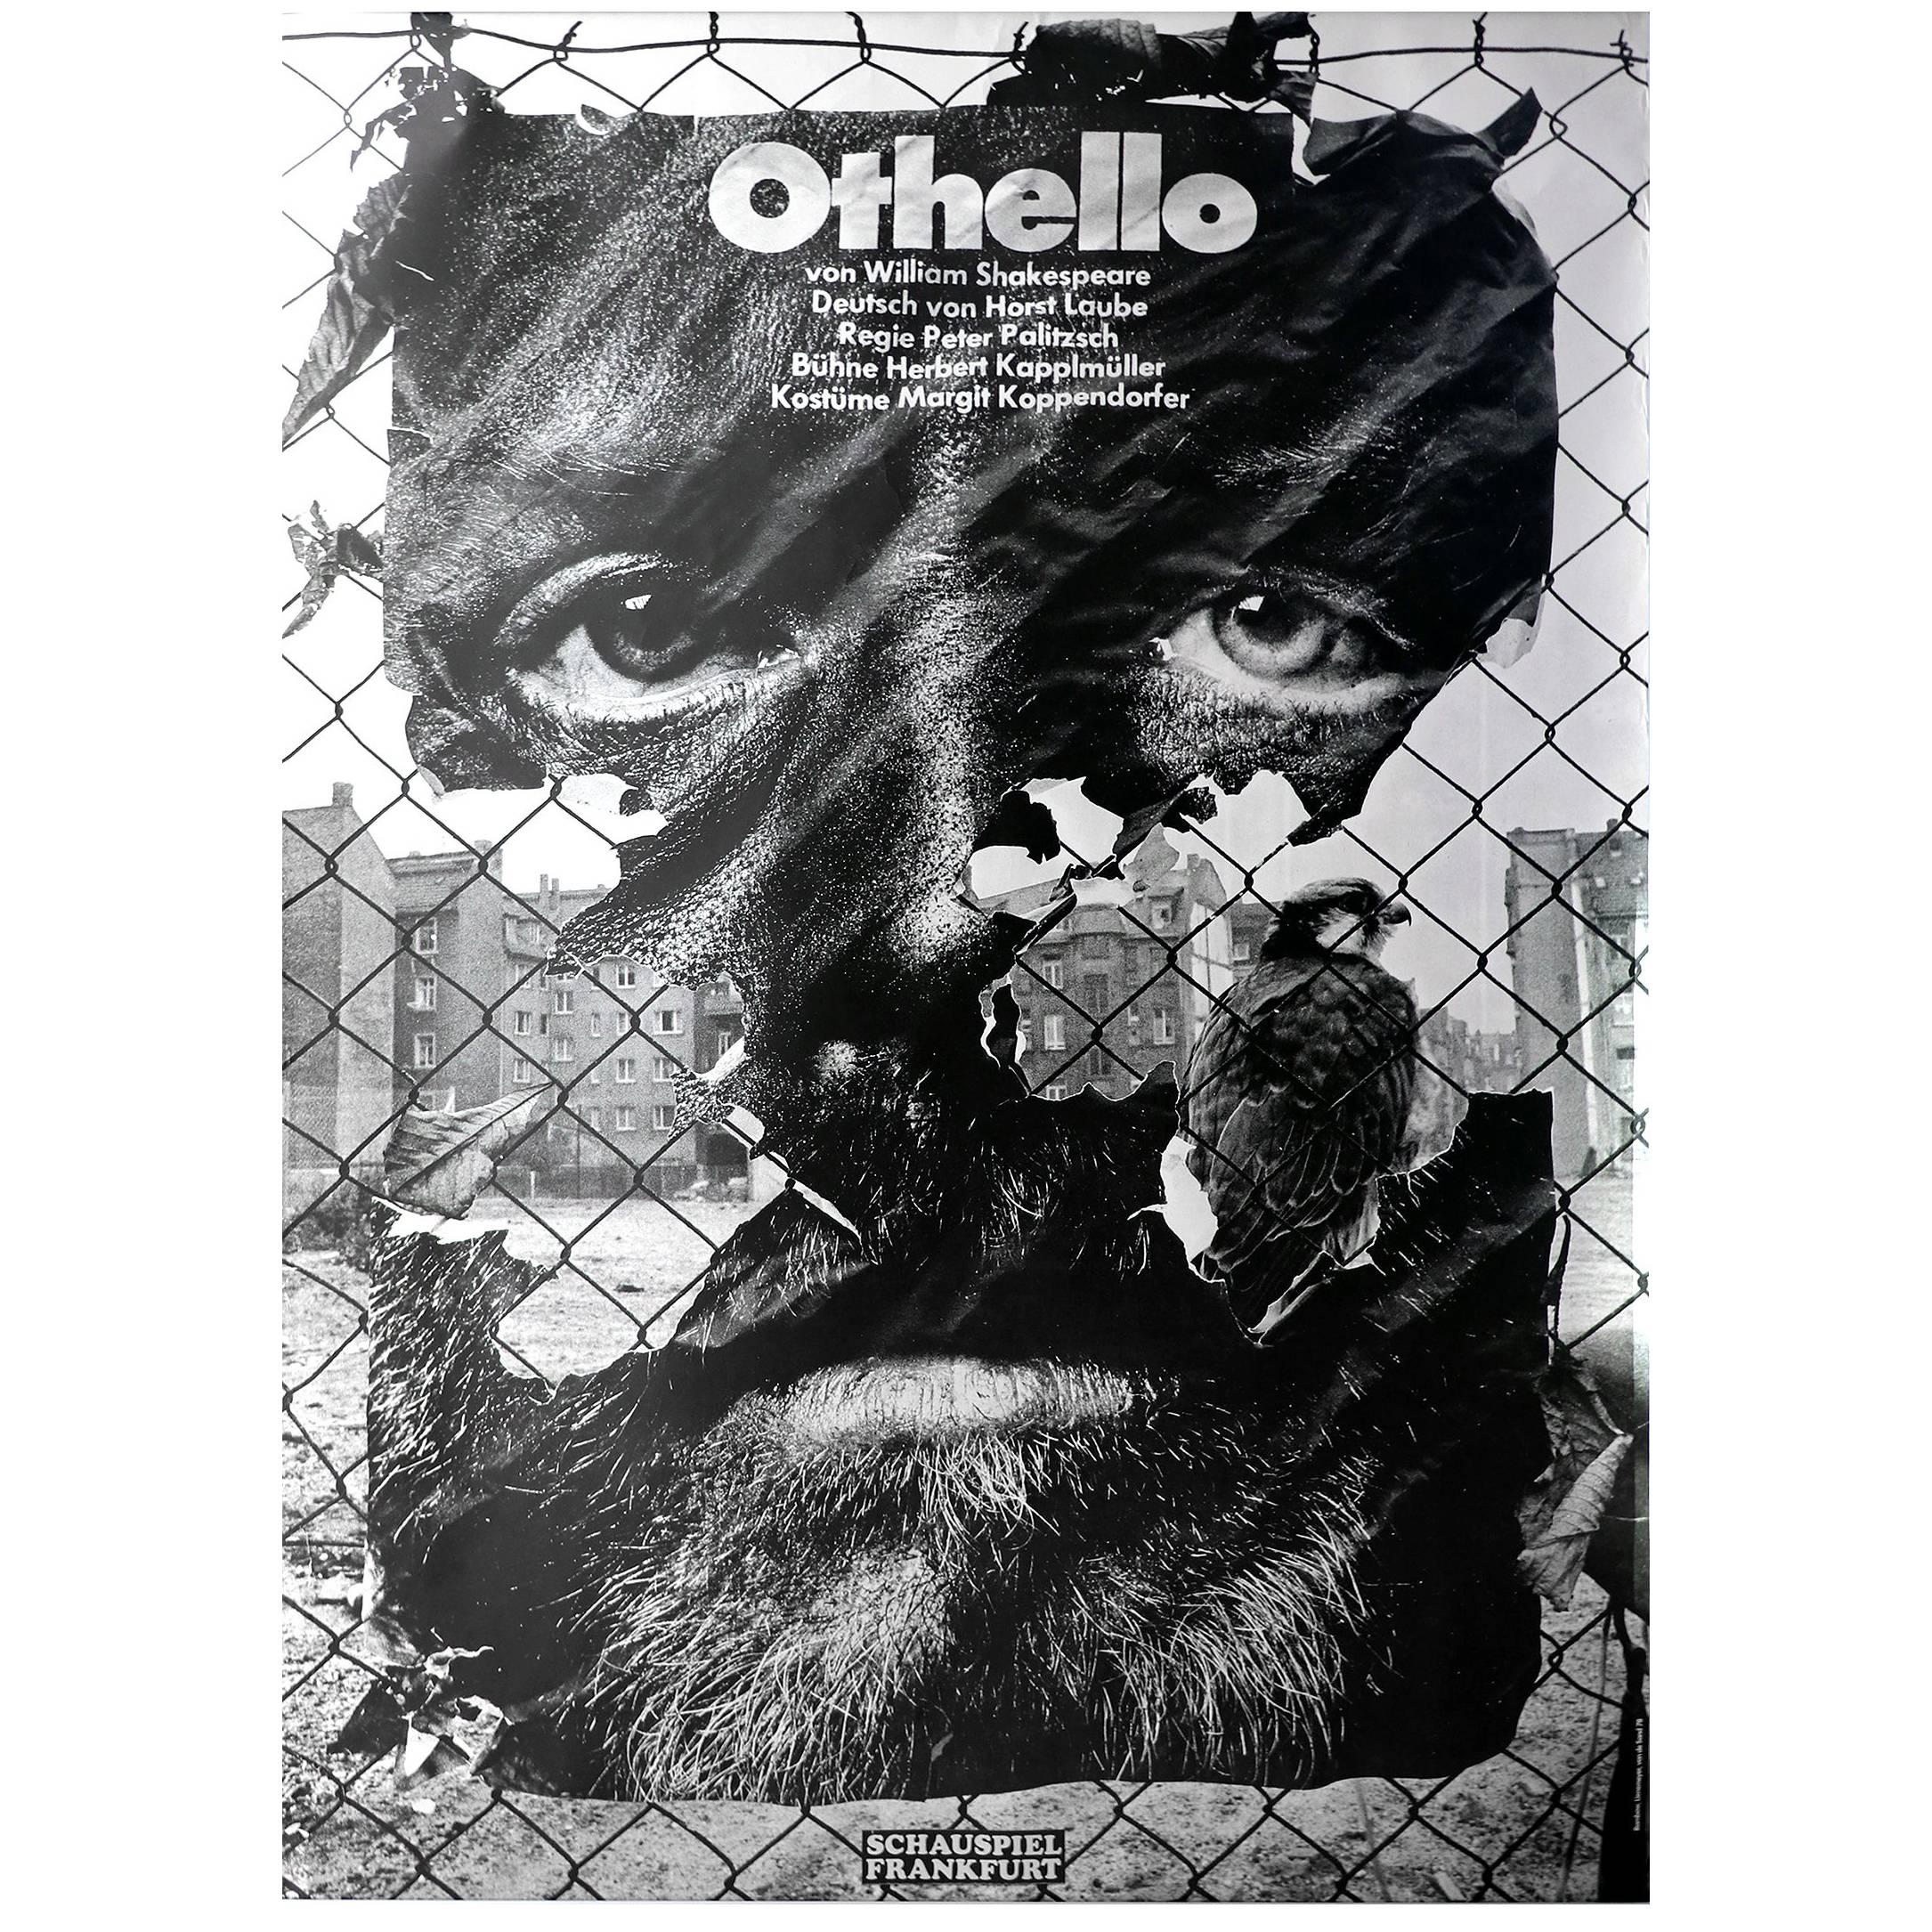 Original First Printing Poster by German Designer Gunter Rambow, 1978